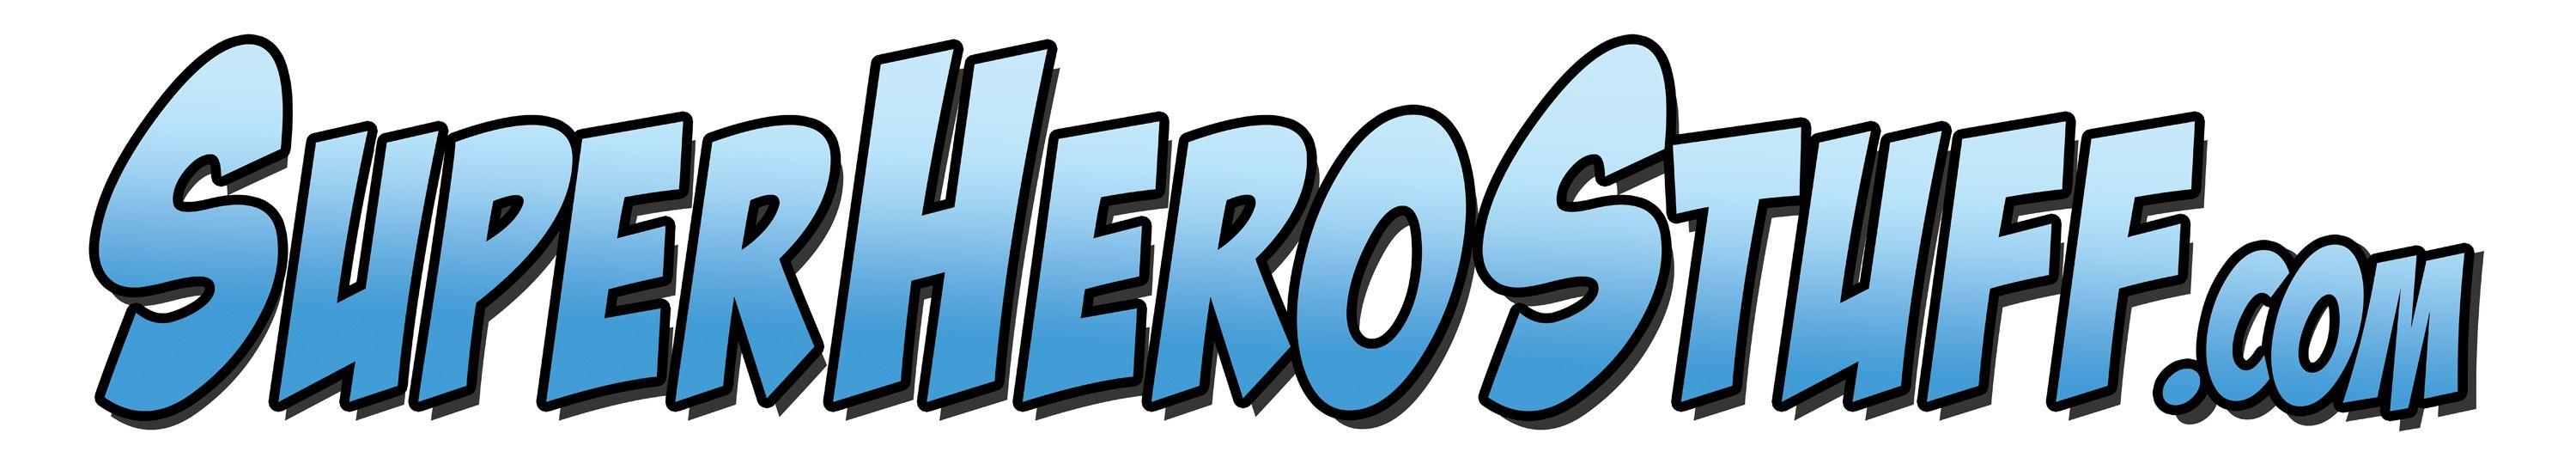 Superherostuff.com Logo - Monster Lists! Jarred Gives Us His Best Websites and TV Shows